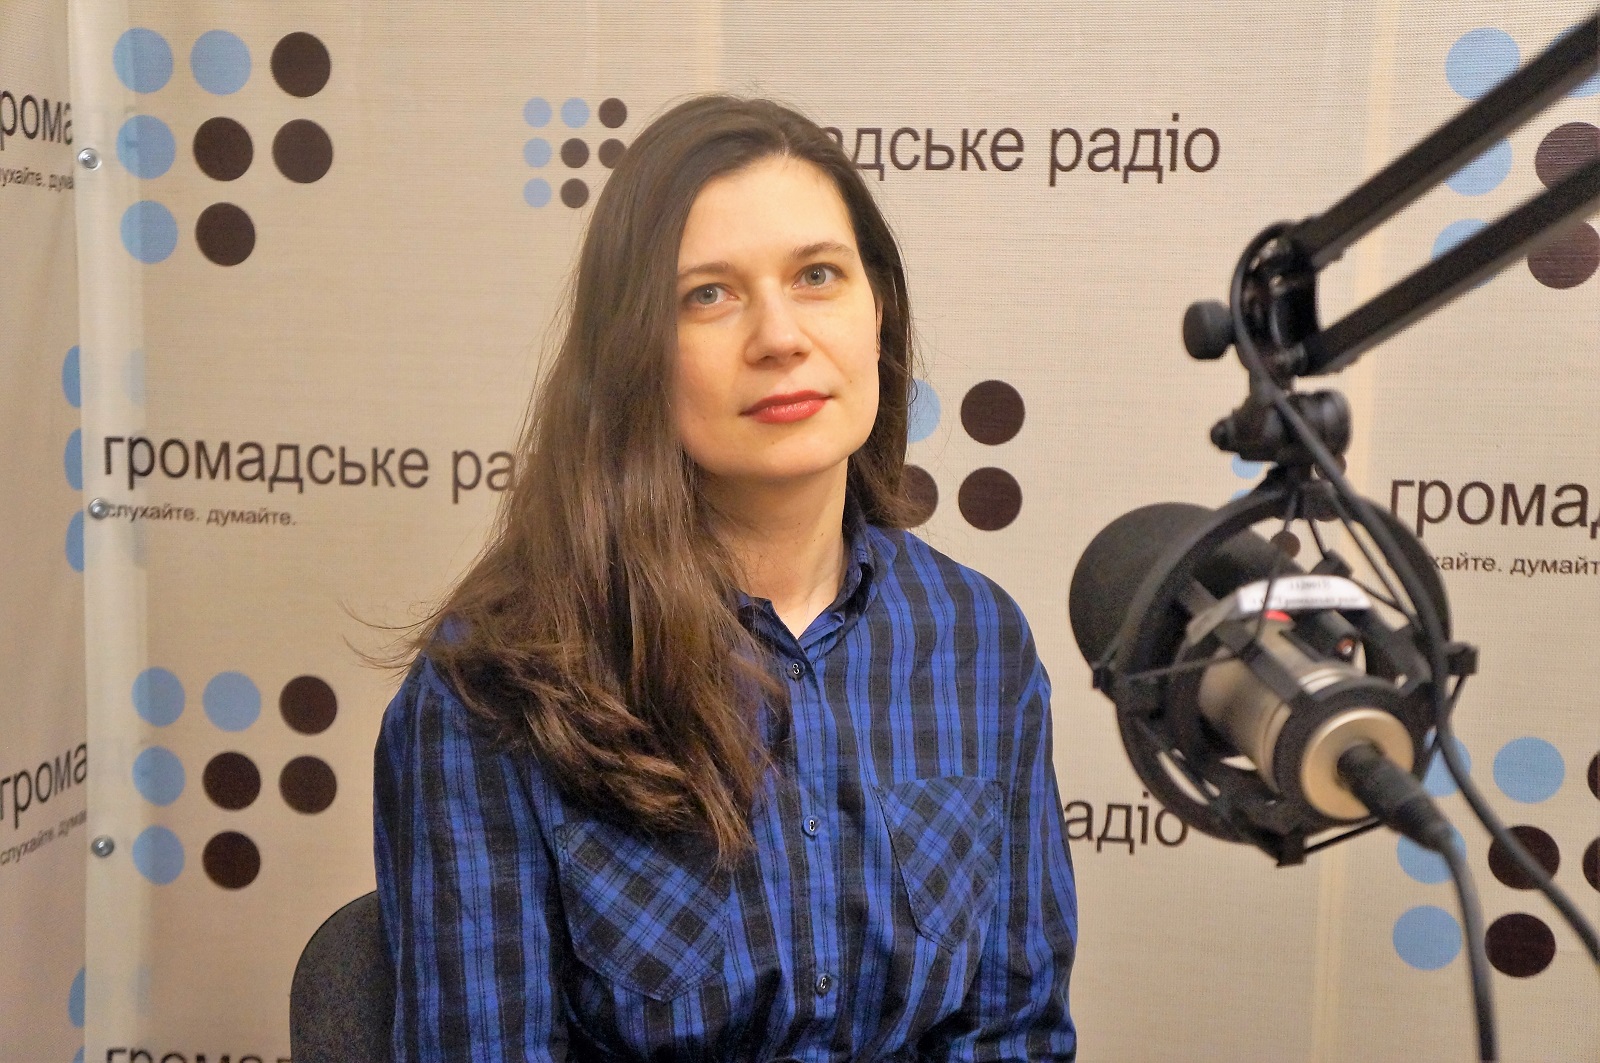 Нужны правила, по которым будут играть Украина и  Россия, — юрист о статусе пленных